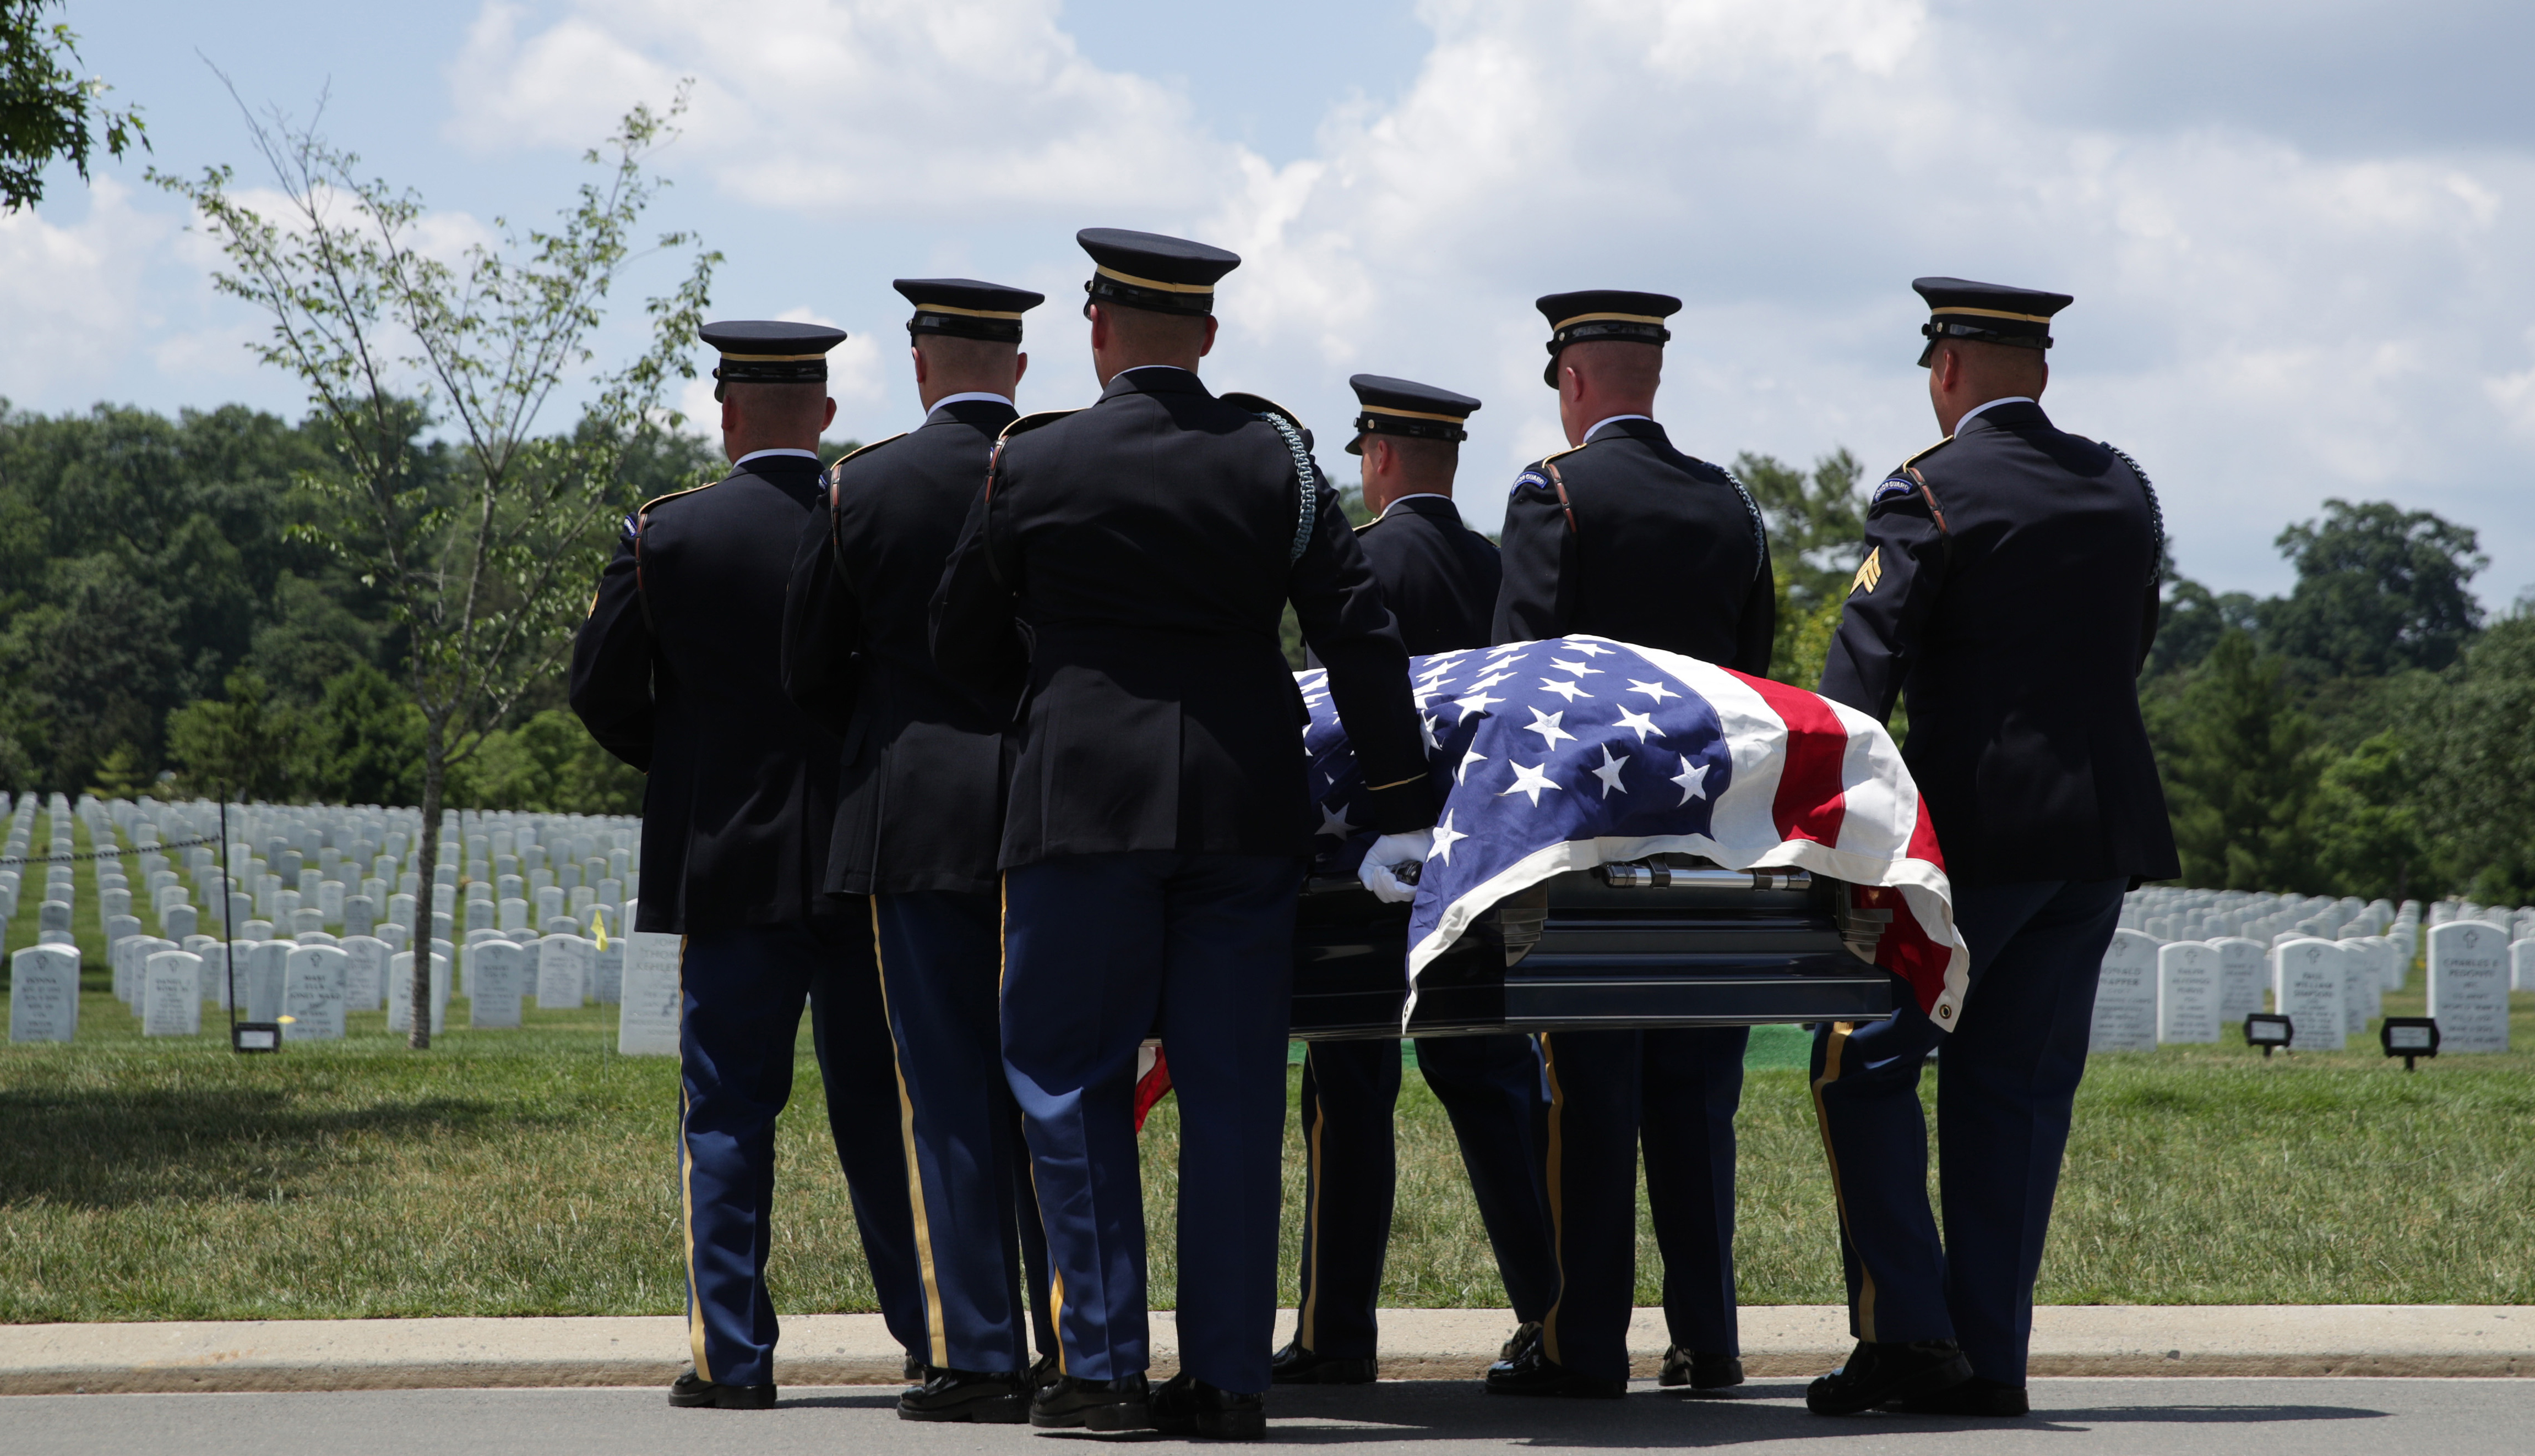 Hombres en uniforme llevan un ataúd envuelto en la bandera estadounidense en un cementerio